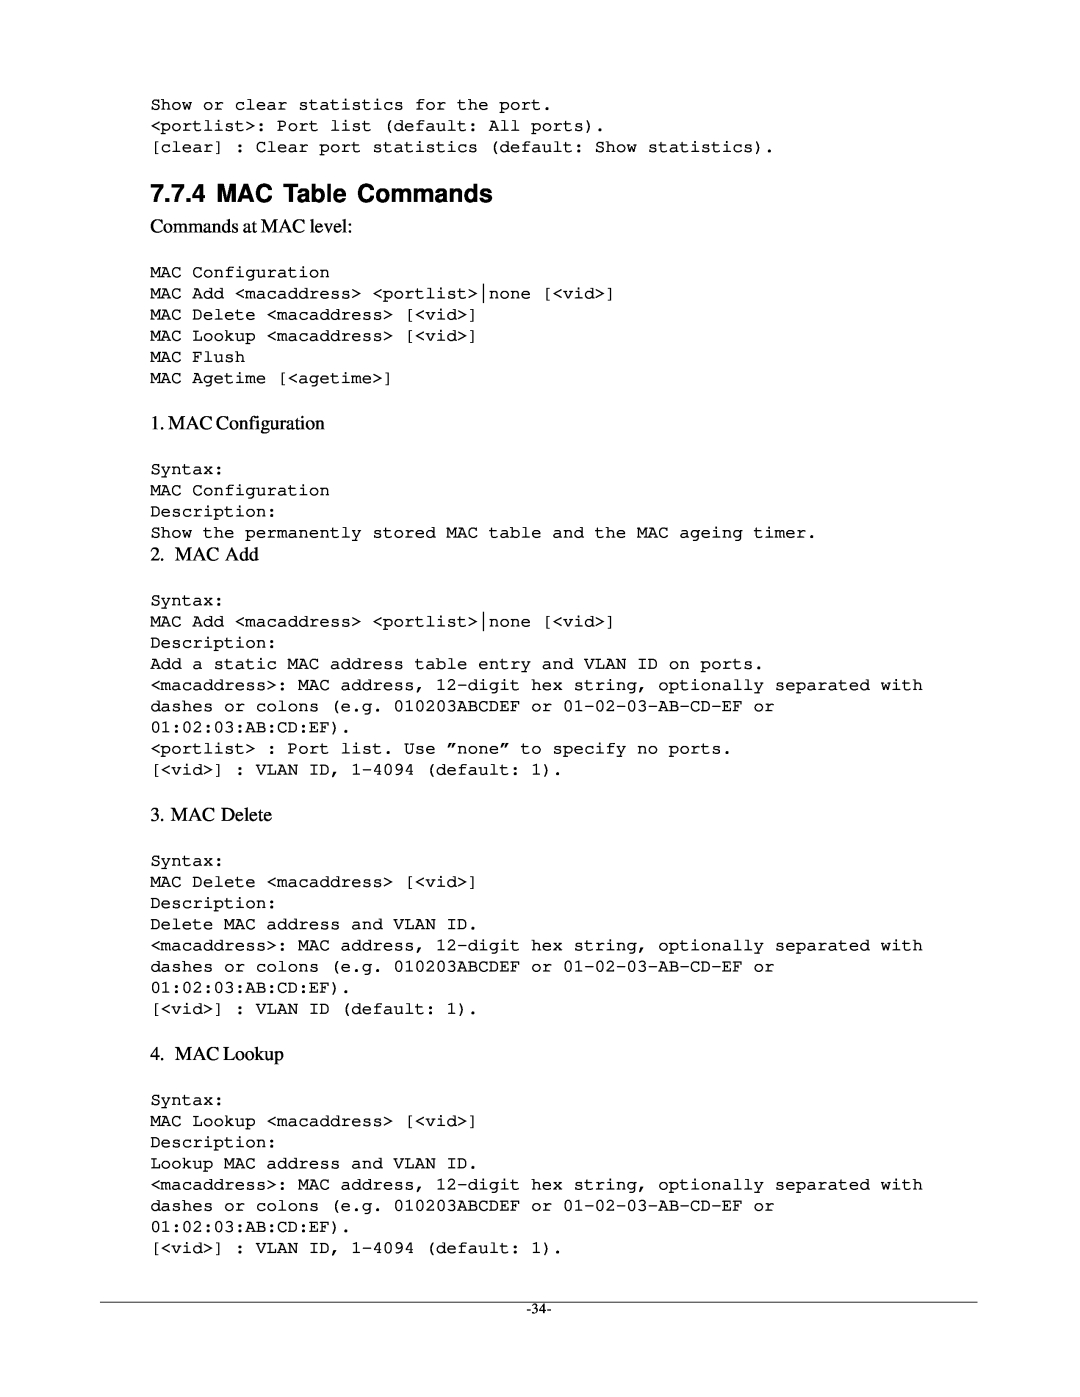 KTI Networks kgs-1601 manual MAC Table Commands, Commands at MAC level, MAC Configuration, MAC Add, MAC Delete, MAC Lookup 